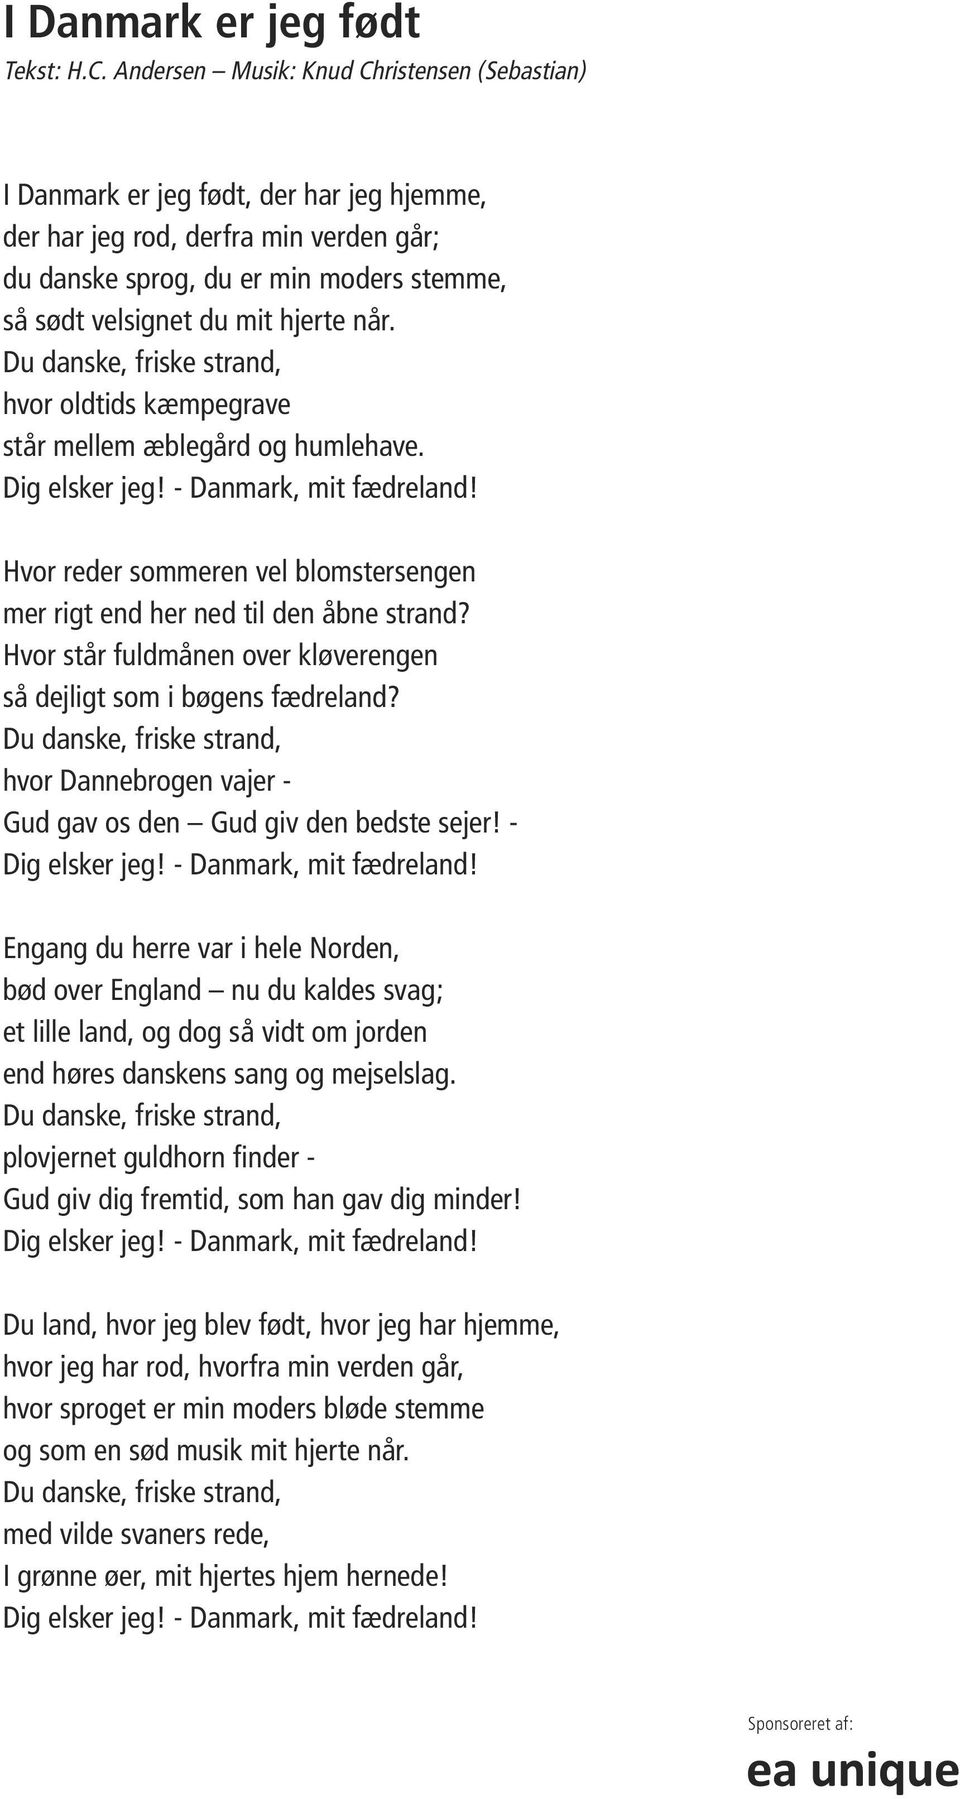 Sange i sommernatten på Kinahøjen i Akademihaven, Sorø - PDF Free ...